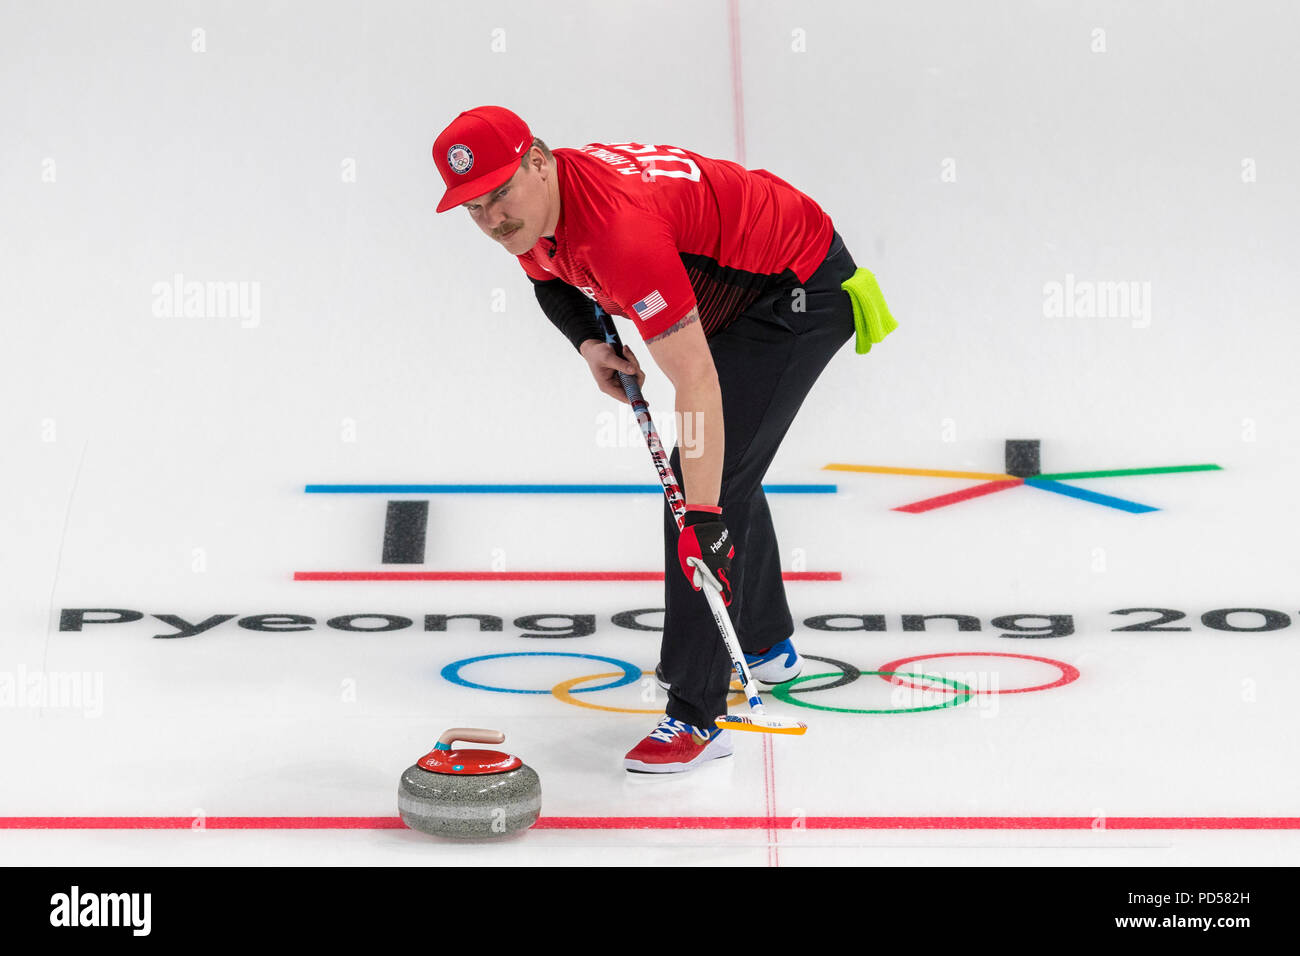 Matt Hamilton (USA) qui se font concurrence dans le double mixte, round robin de curling aux Jeux Olympiques d'hiver de PyeongChang 2018 Banque D'Images